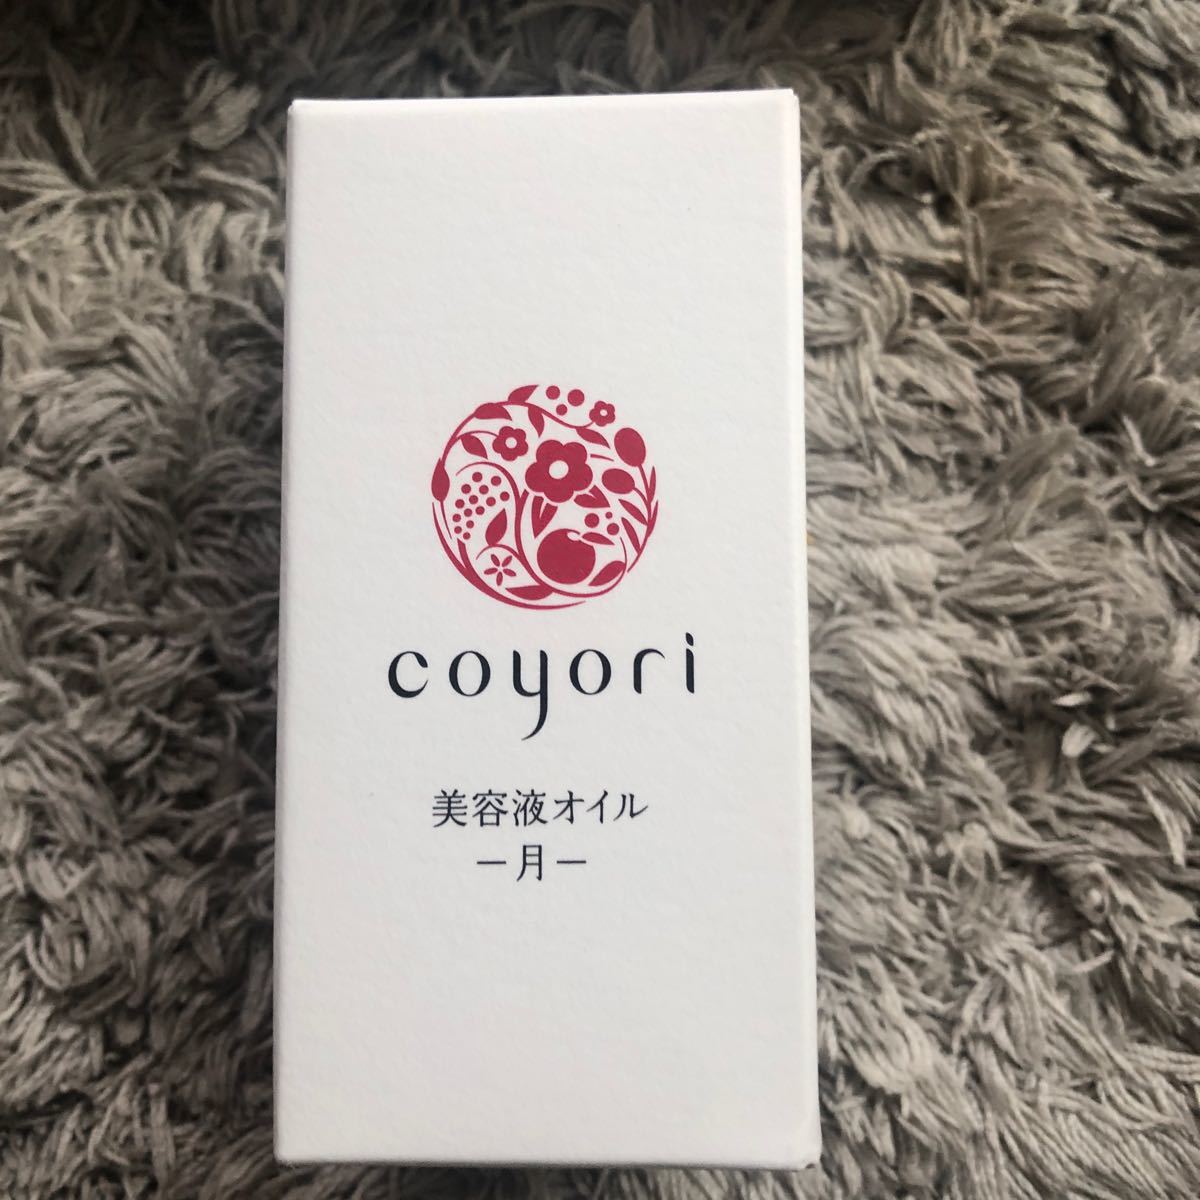 【送料無料】5個セット 新品 JIMOS coyori コヨリ 美容液オイル -月- 美容液_画像2